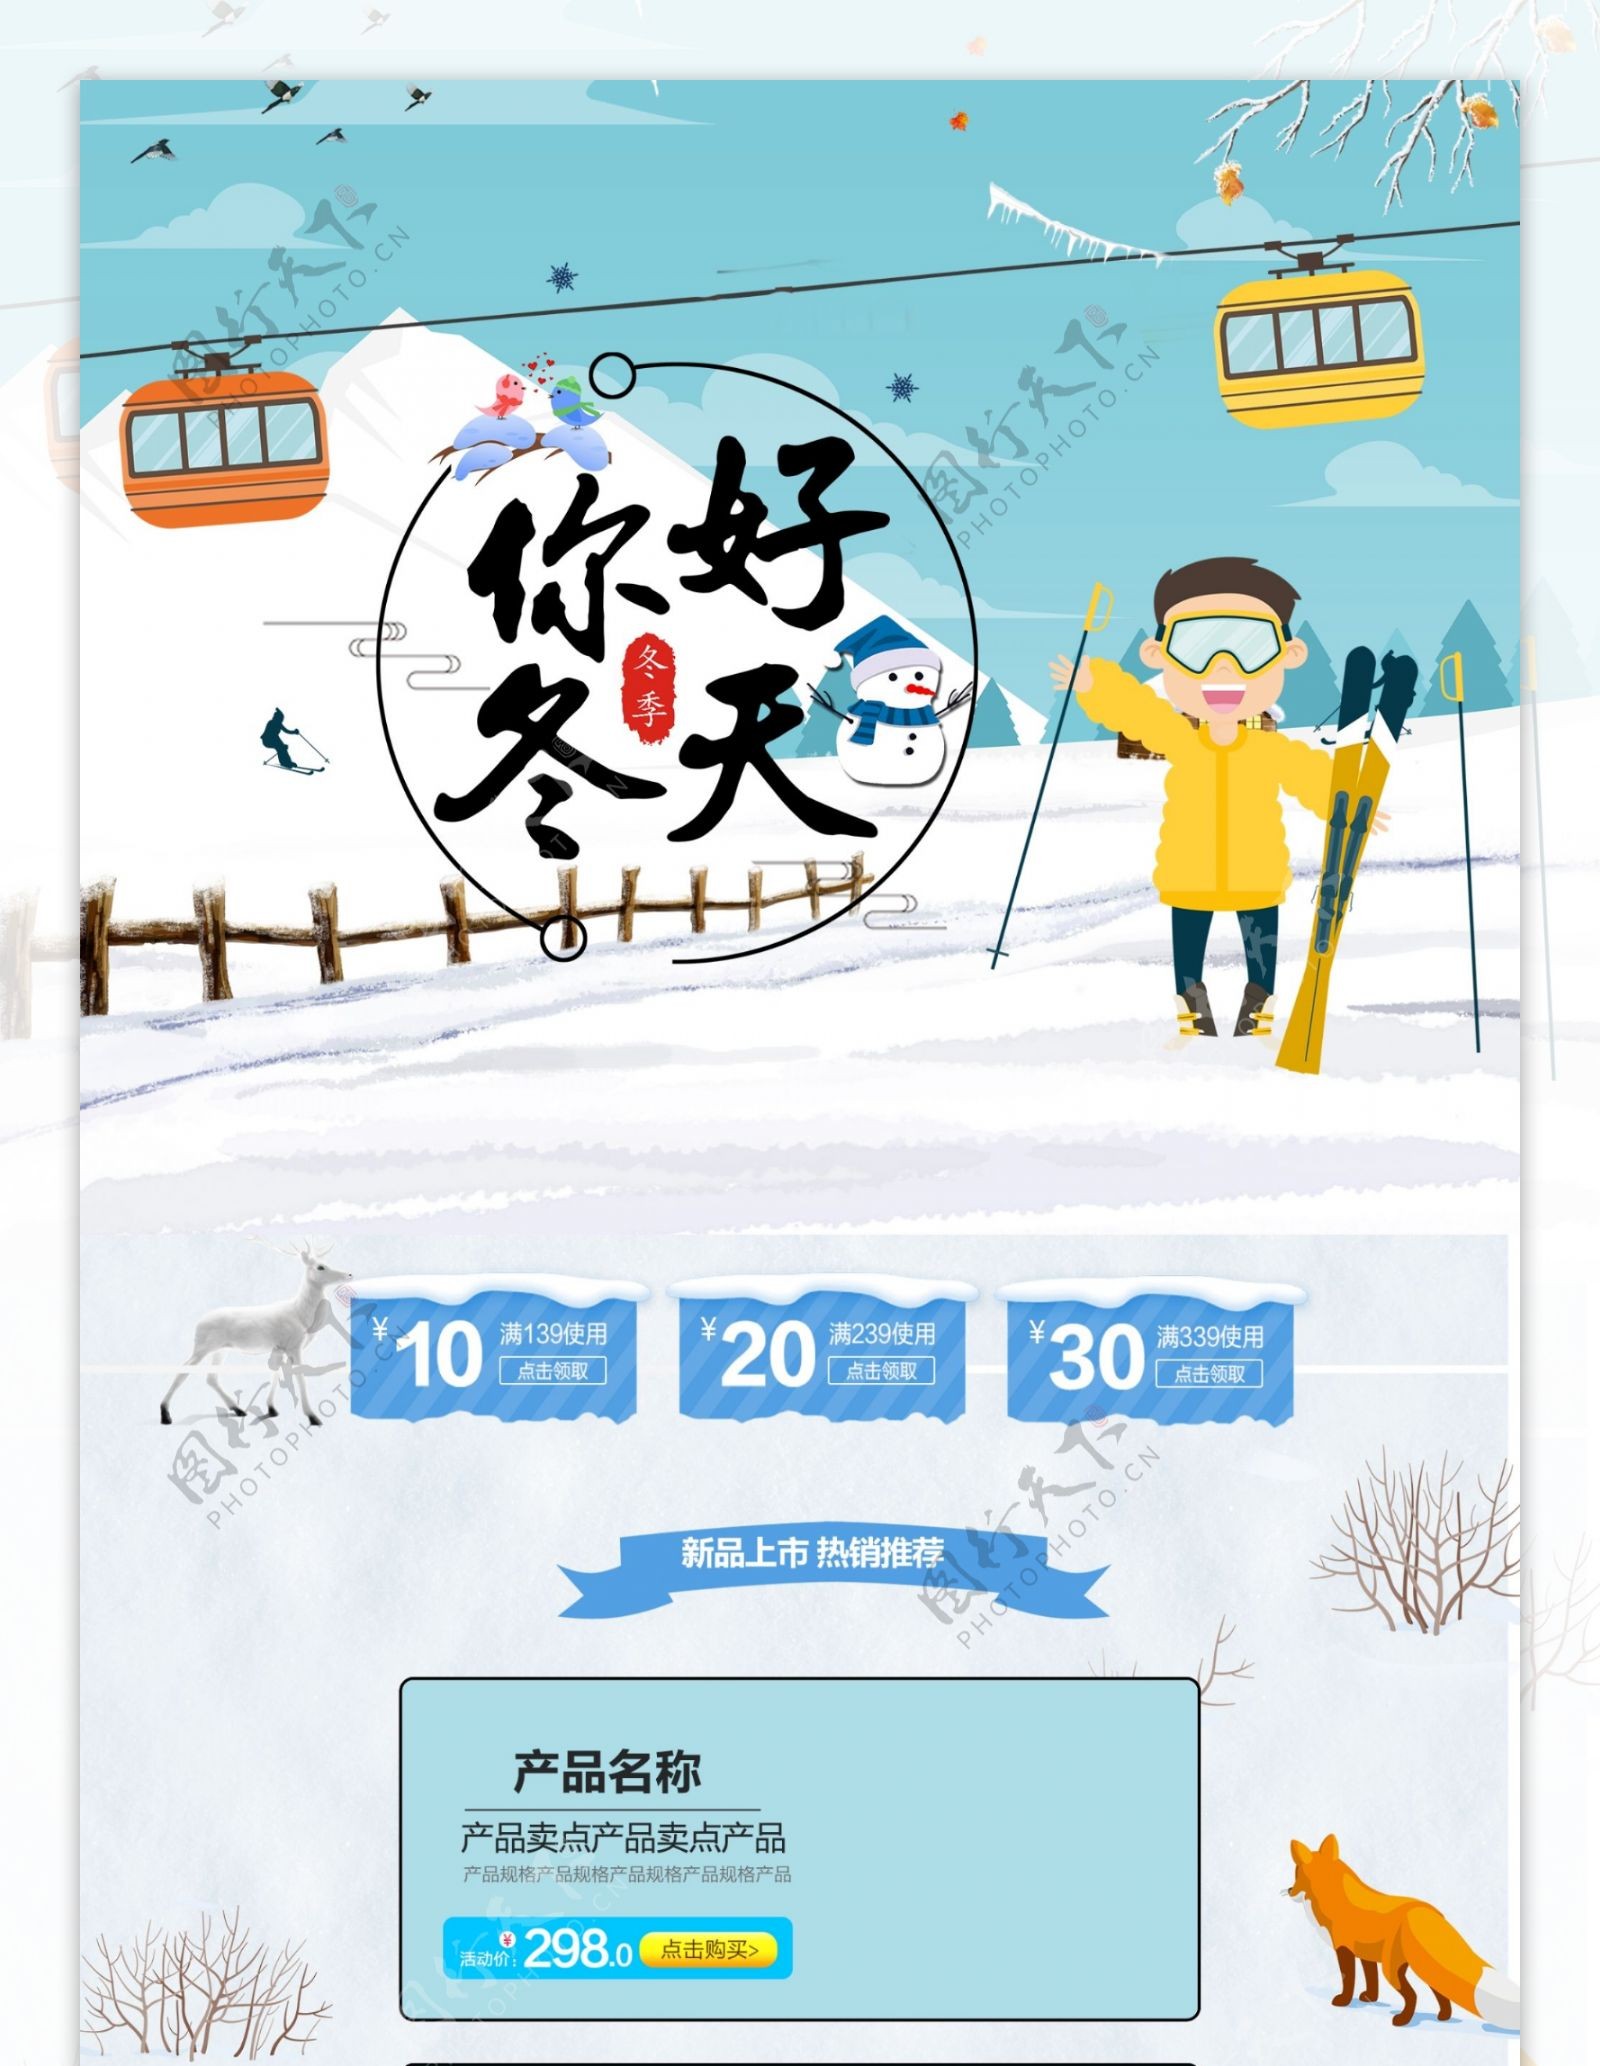 千库原创蓝色冬季促销手绘插画风格电商首页